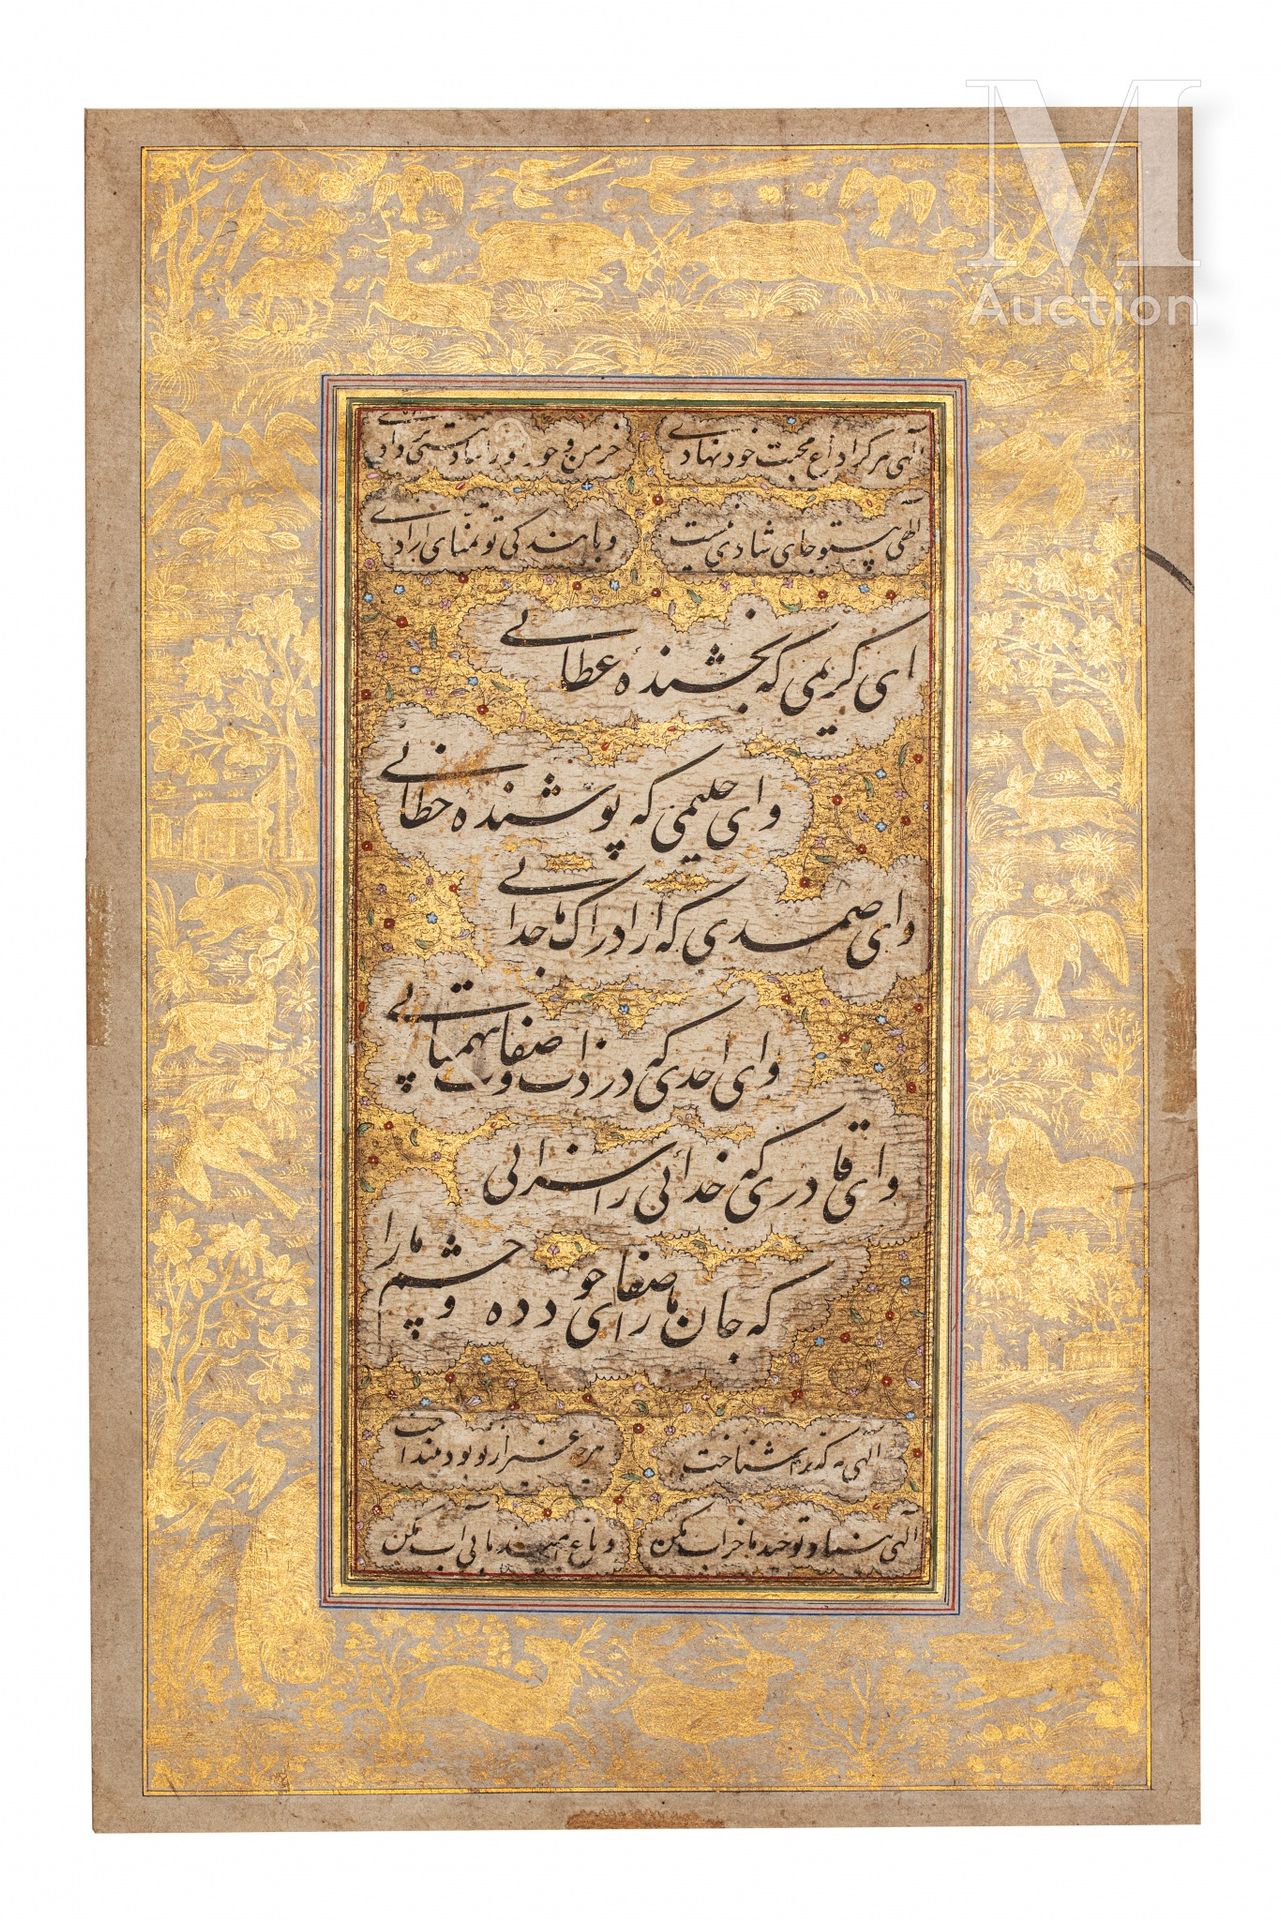 Calligraphie moghole India, siglo XVIII

Página de álbum, compuesta por caligraf&hellip;